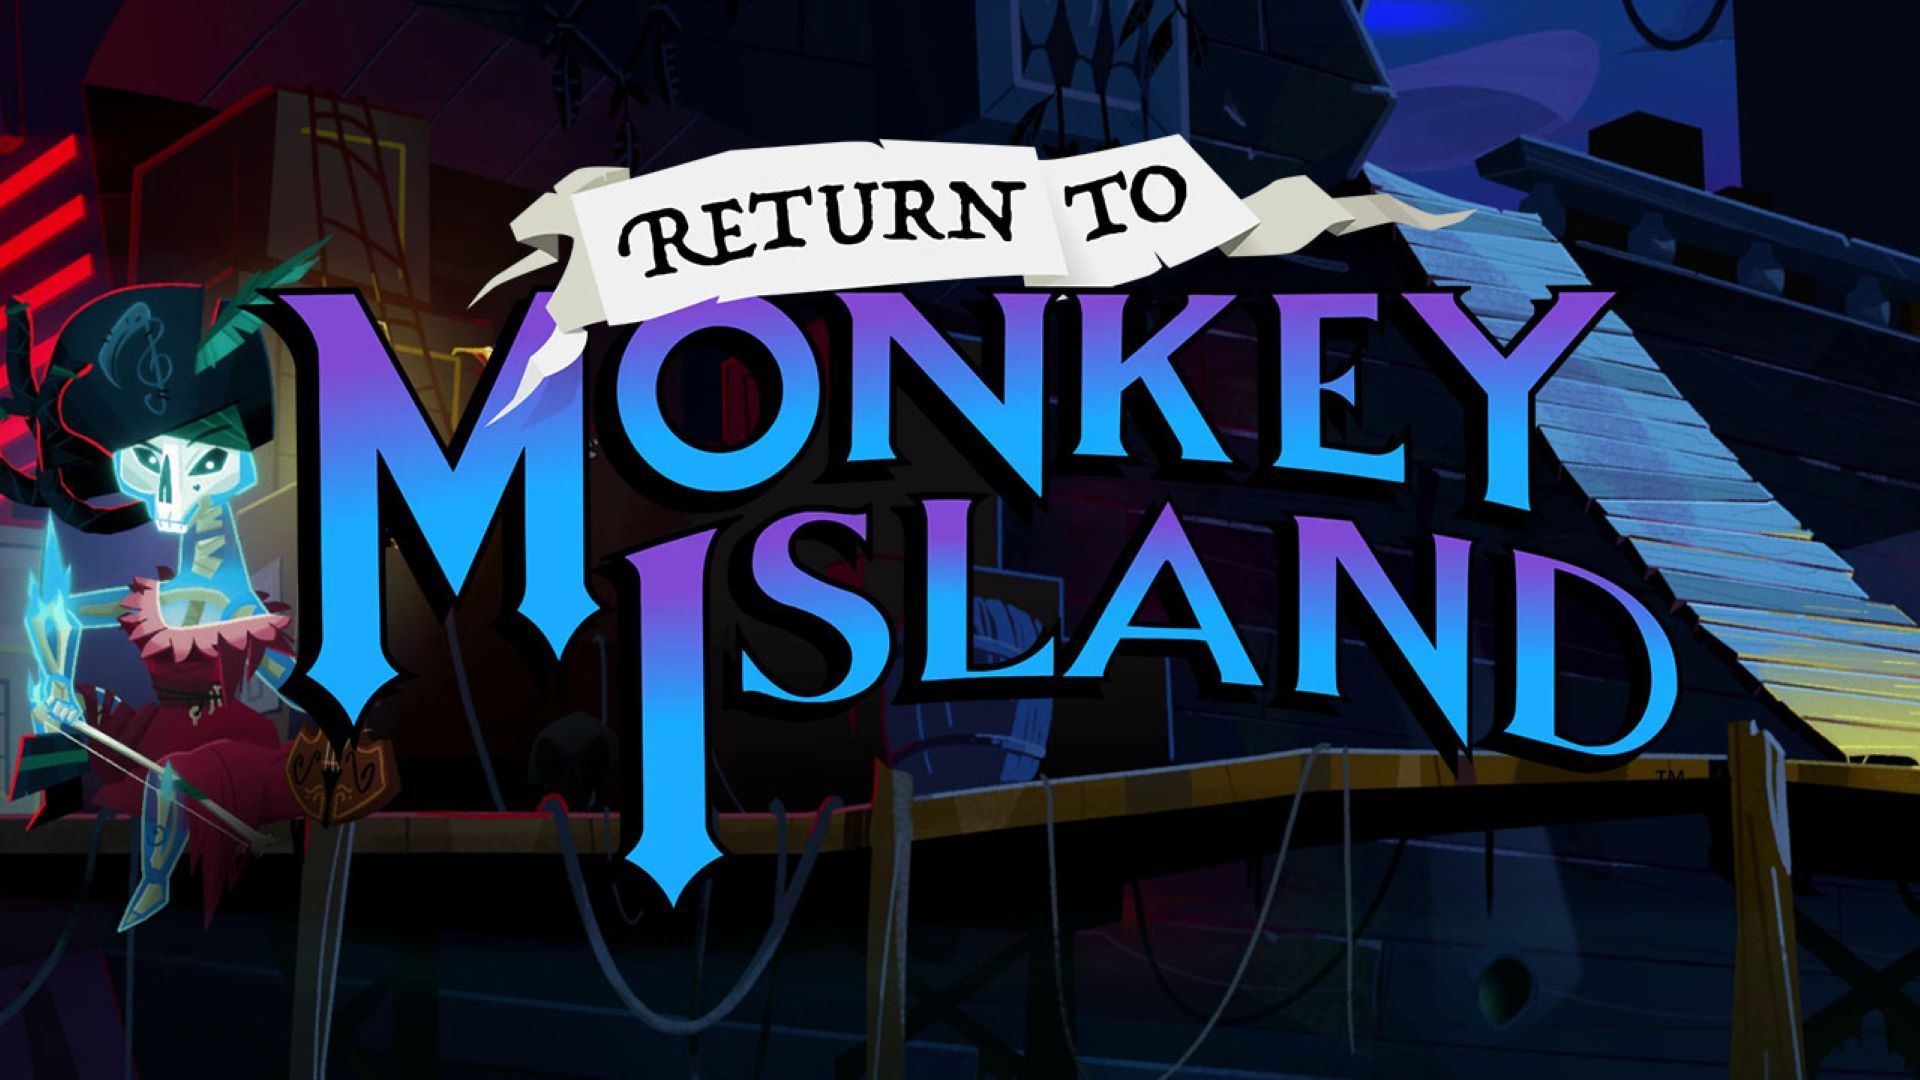 بازی Return to Monkey Island به صورت رسمی توسط سازندگان قدیمی این بازی رونمایی شد